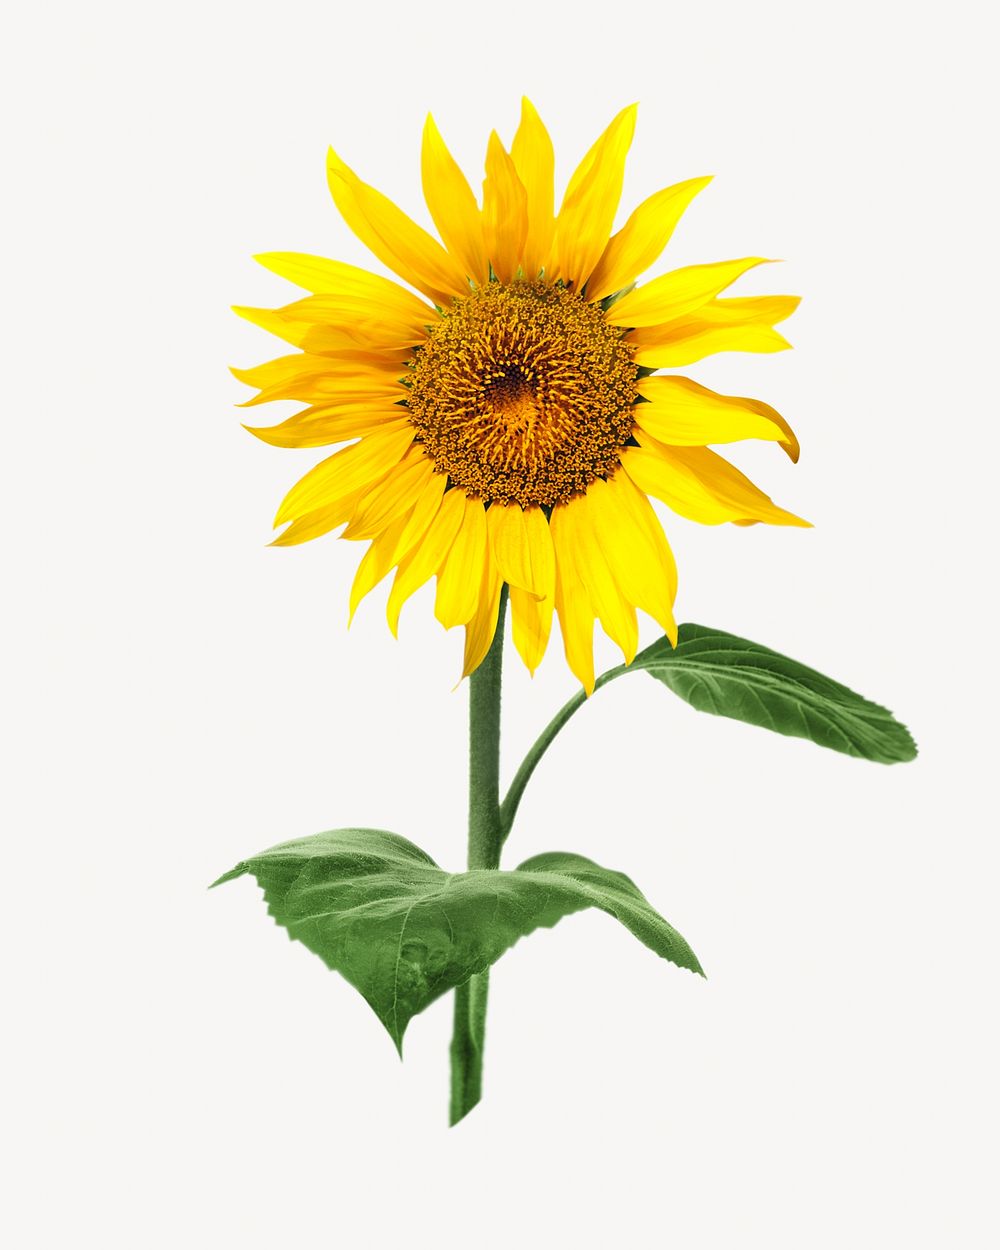 Sunflower isolated image